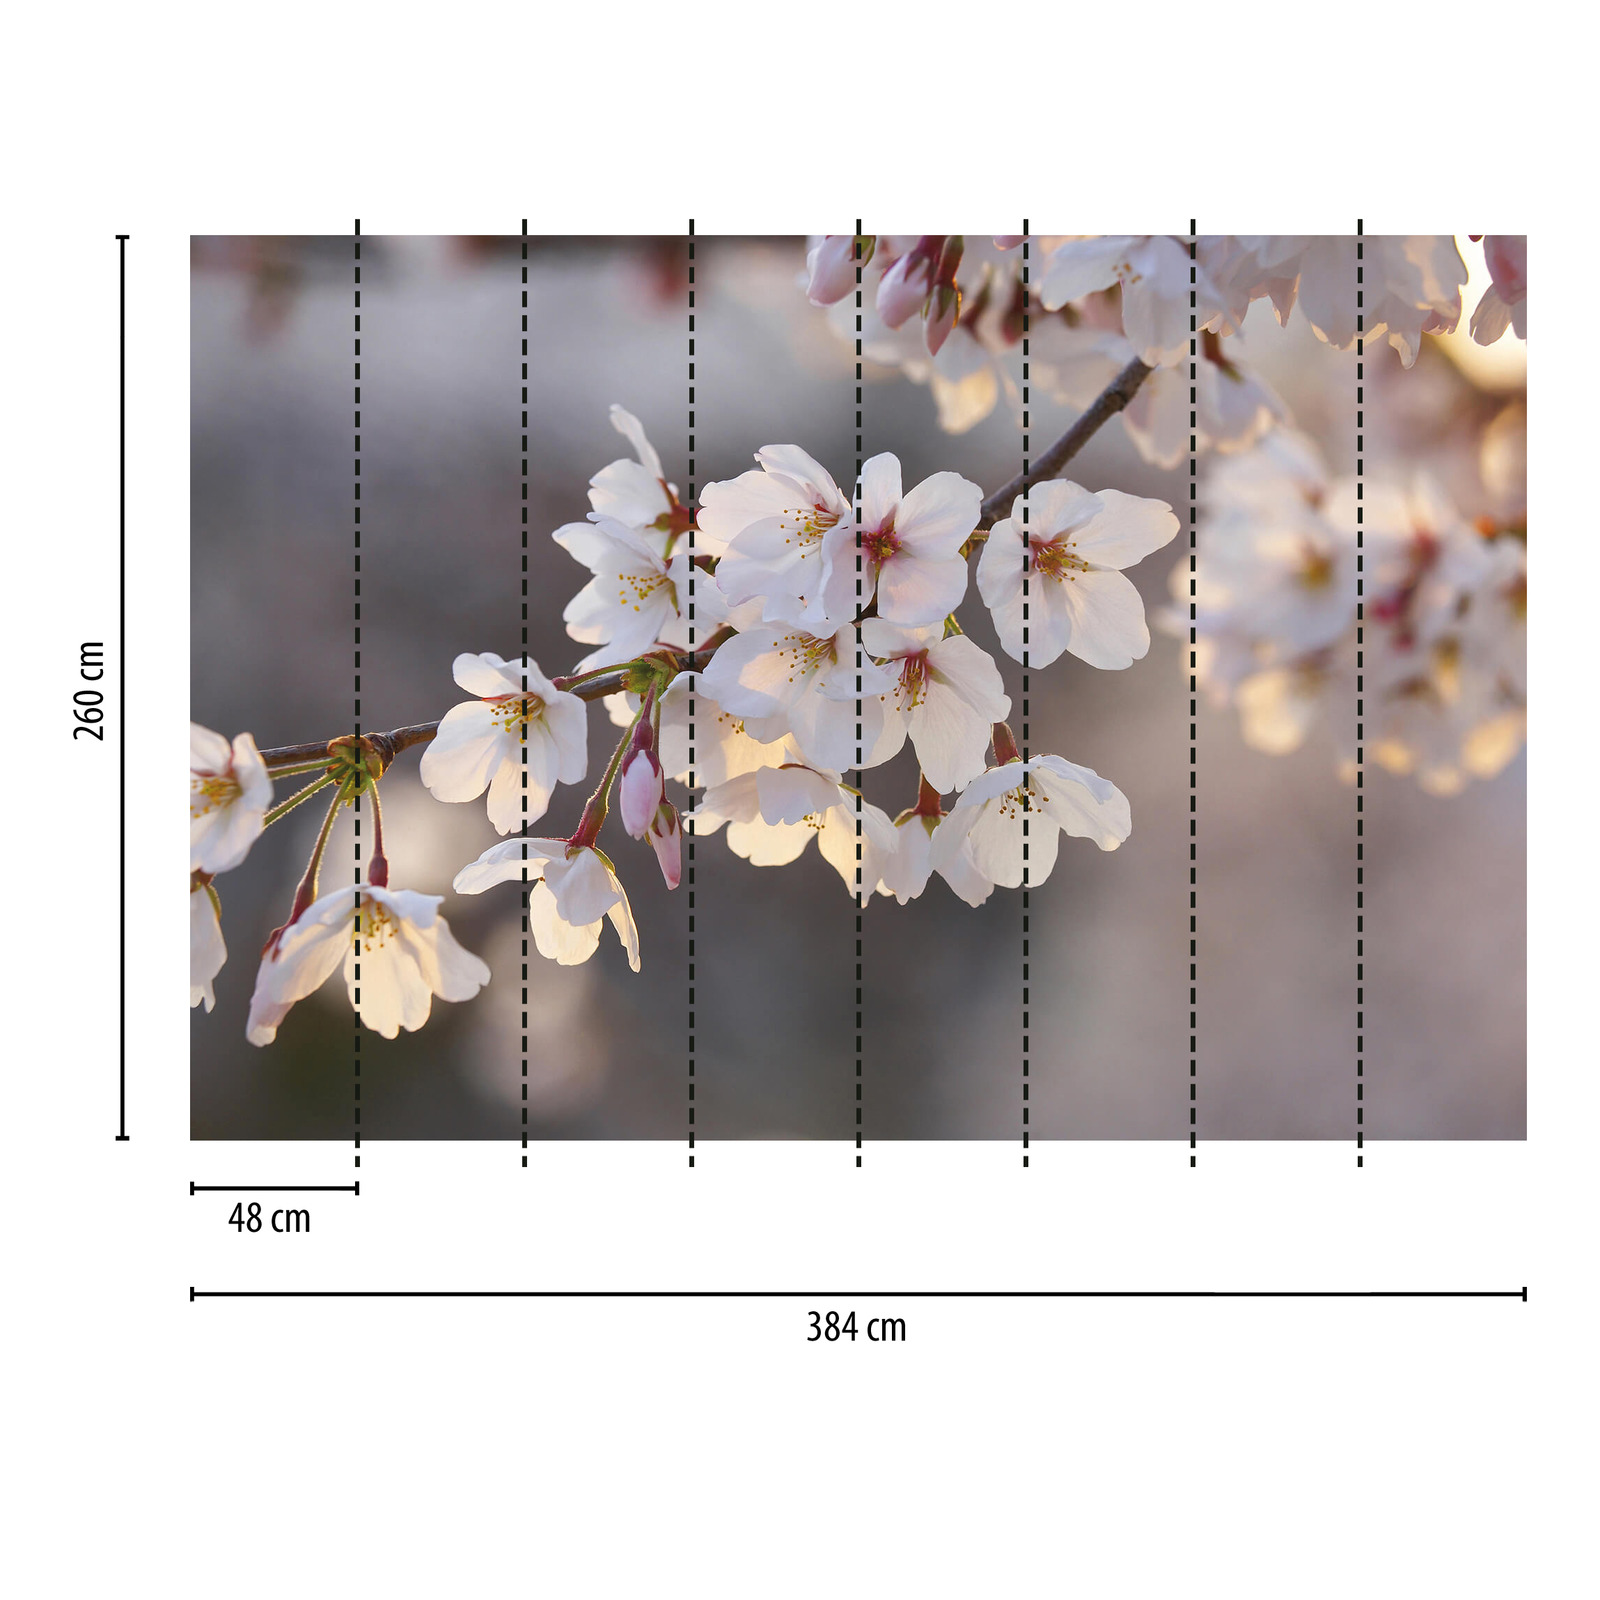             Fototapete Kirschblüten – Weiß, Rosa, Braun
        